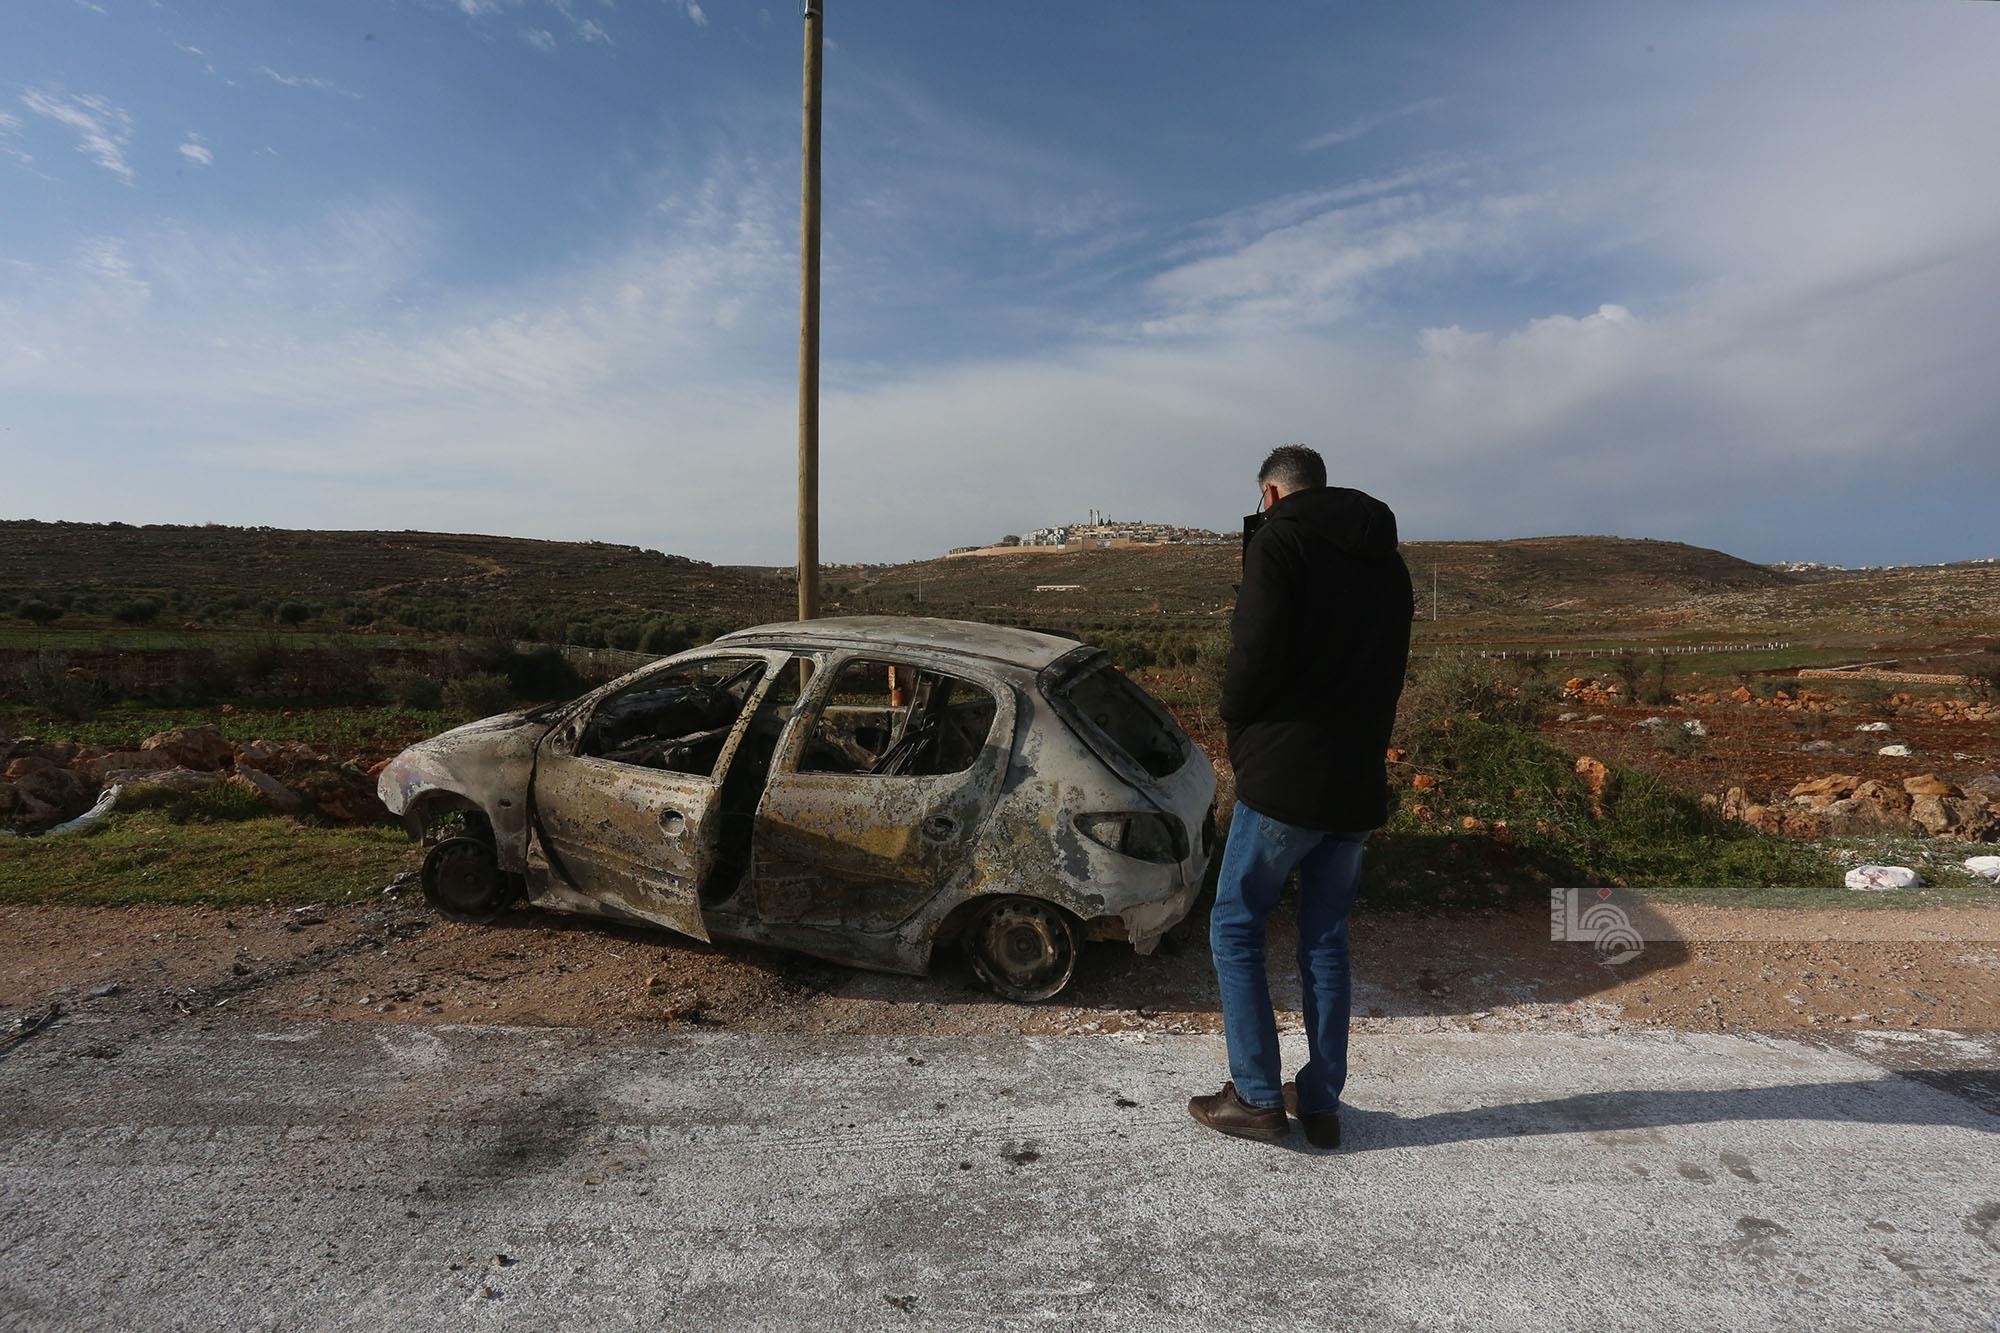 مستوطنون يحرقون ست مركبات فلسطينية بشكل كامل بين بلدتي عقربا ومجدل بني فاضل قرب نابلس 1.jpg